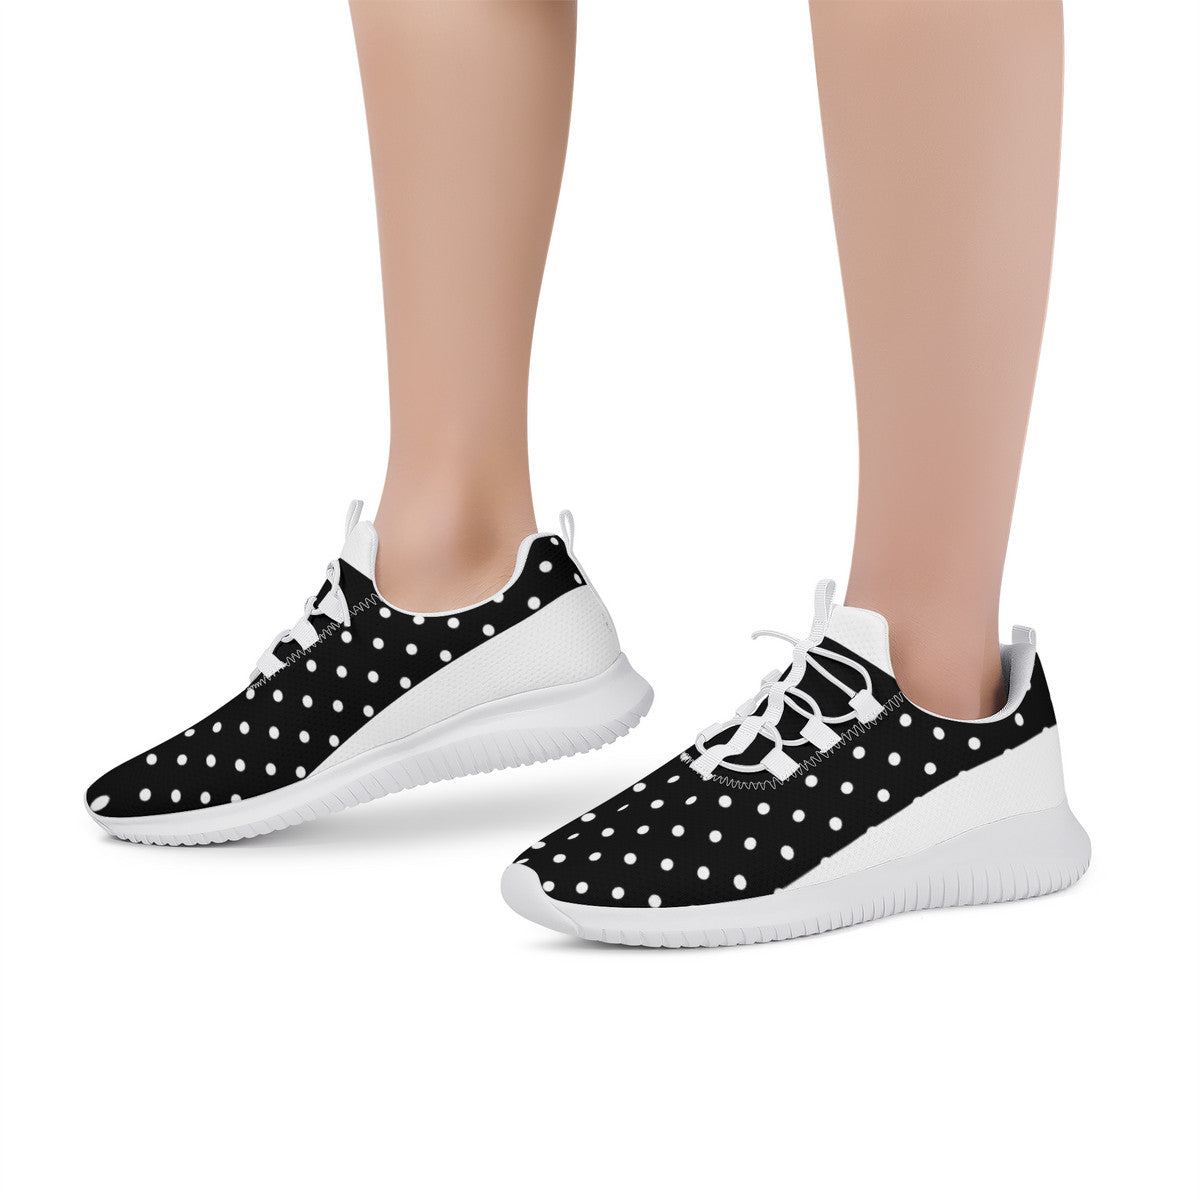 Fitness Sneakers - Polka Dot Black